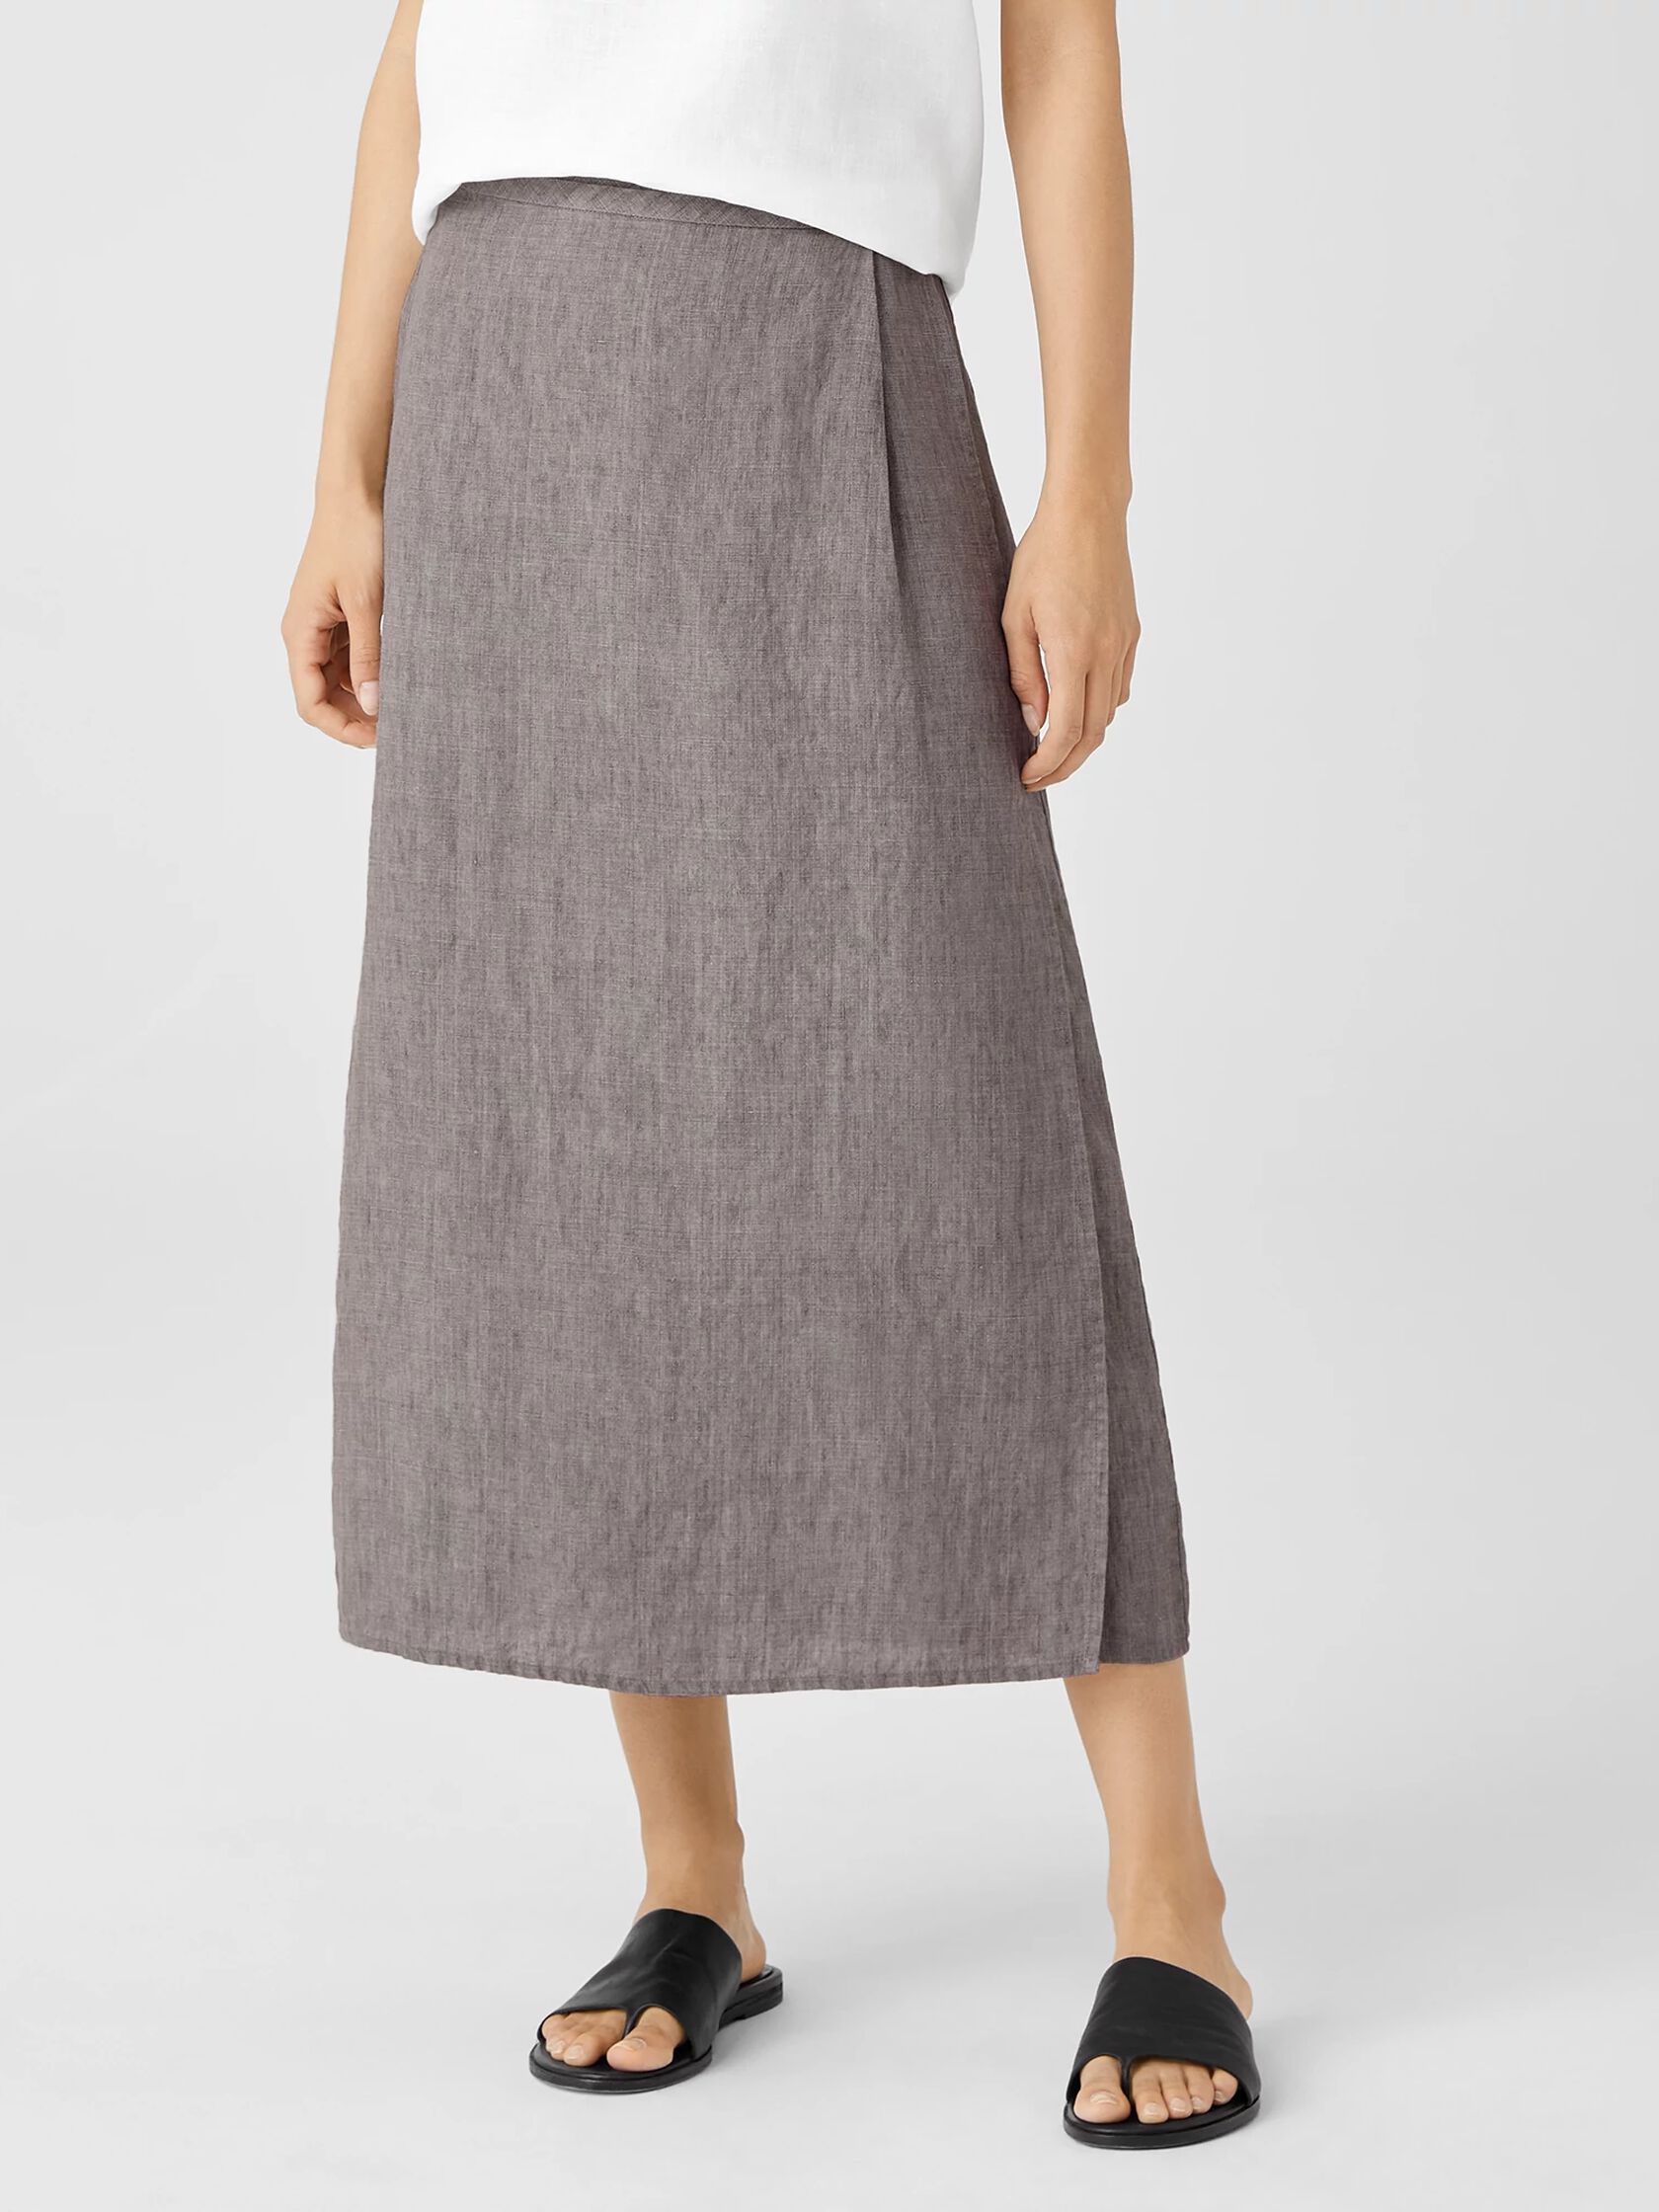 Milkmaid Skirt, 100% Milk Fabric – ARIELLE